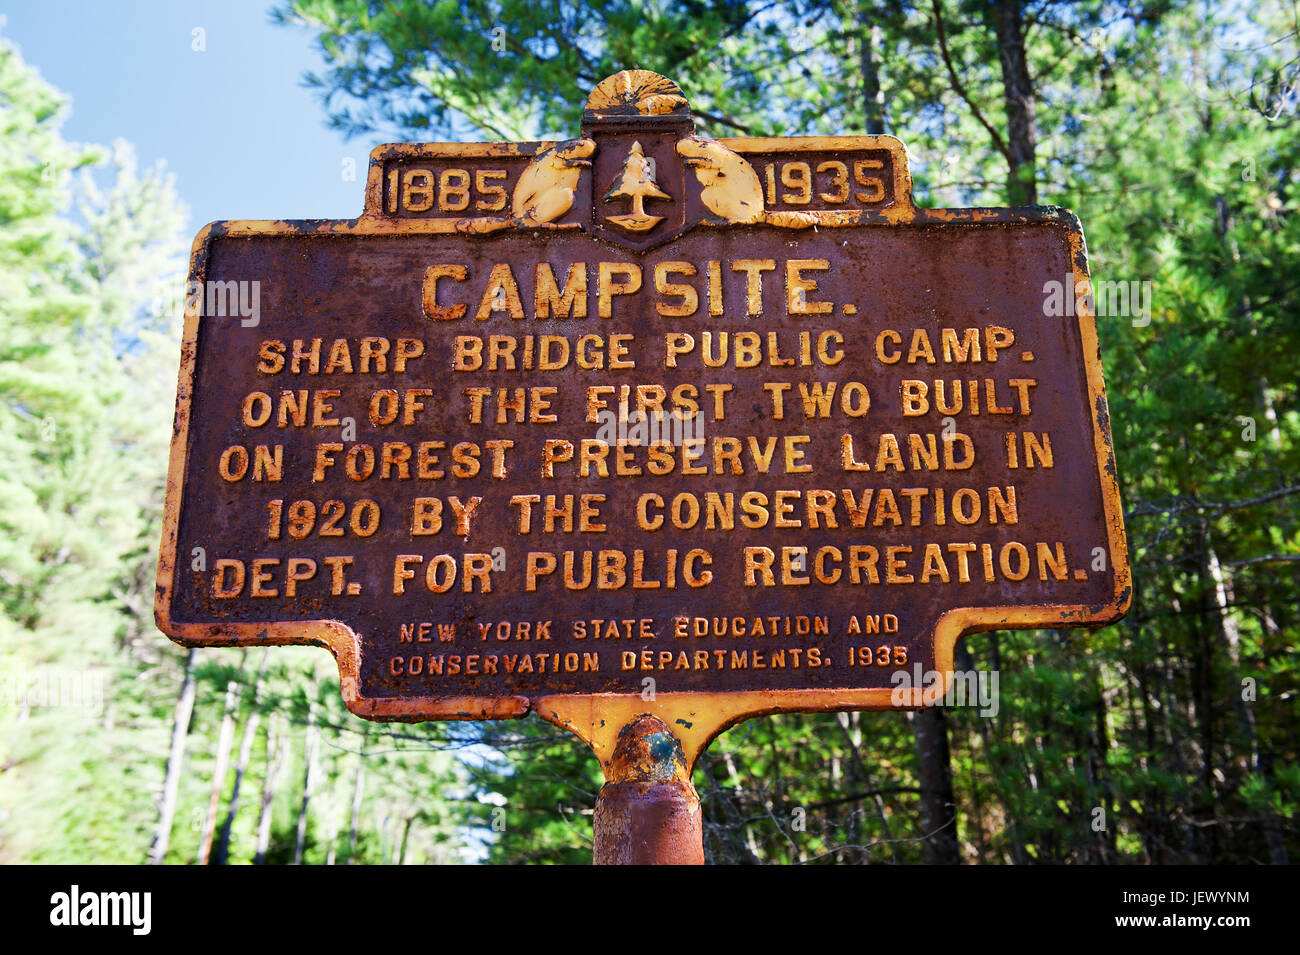 Alten verwitterte rostige Zeichen für die scharfen Bridge-Camp in New York State, USA. Stockfoto